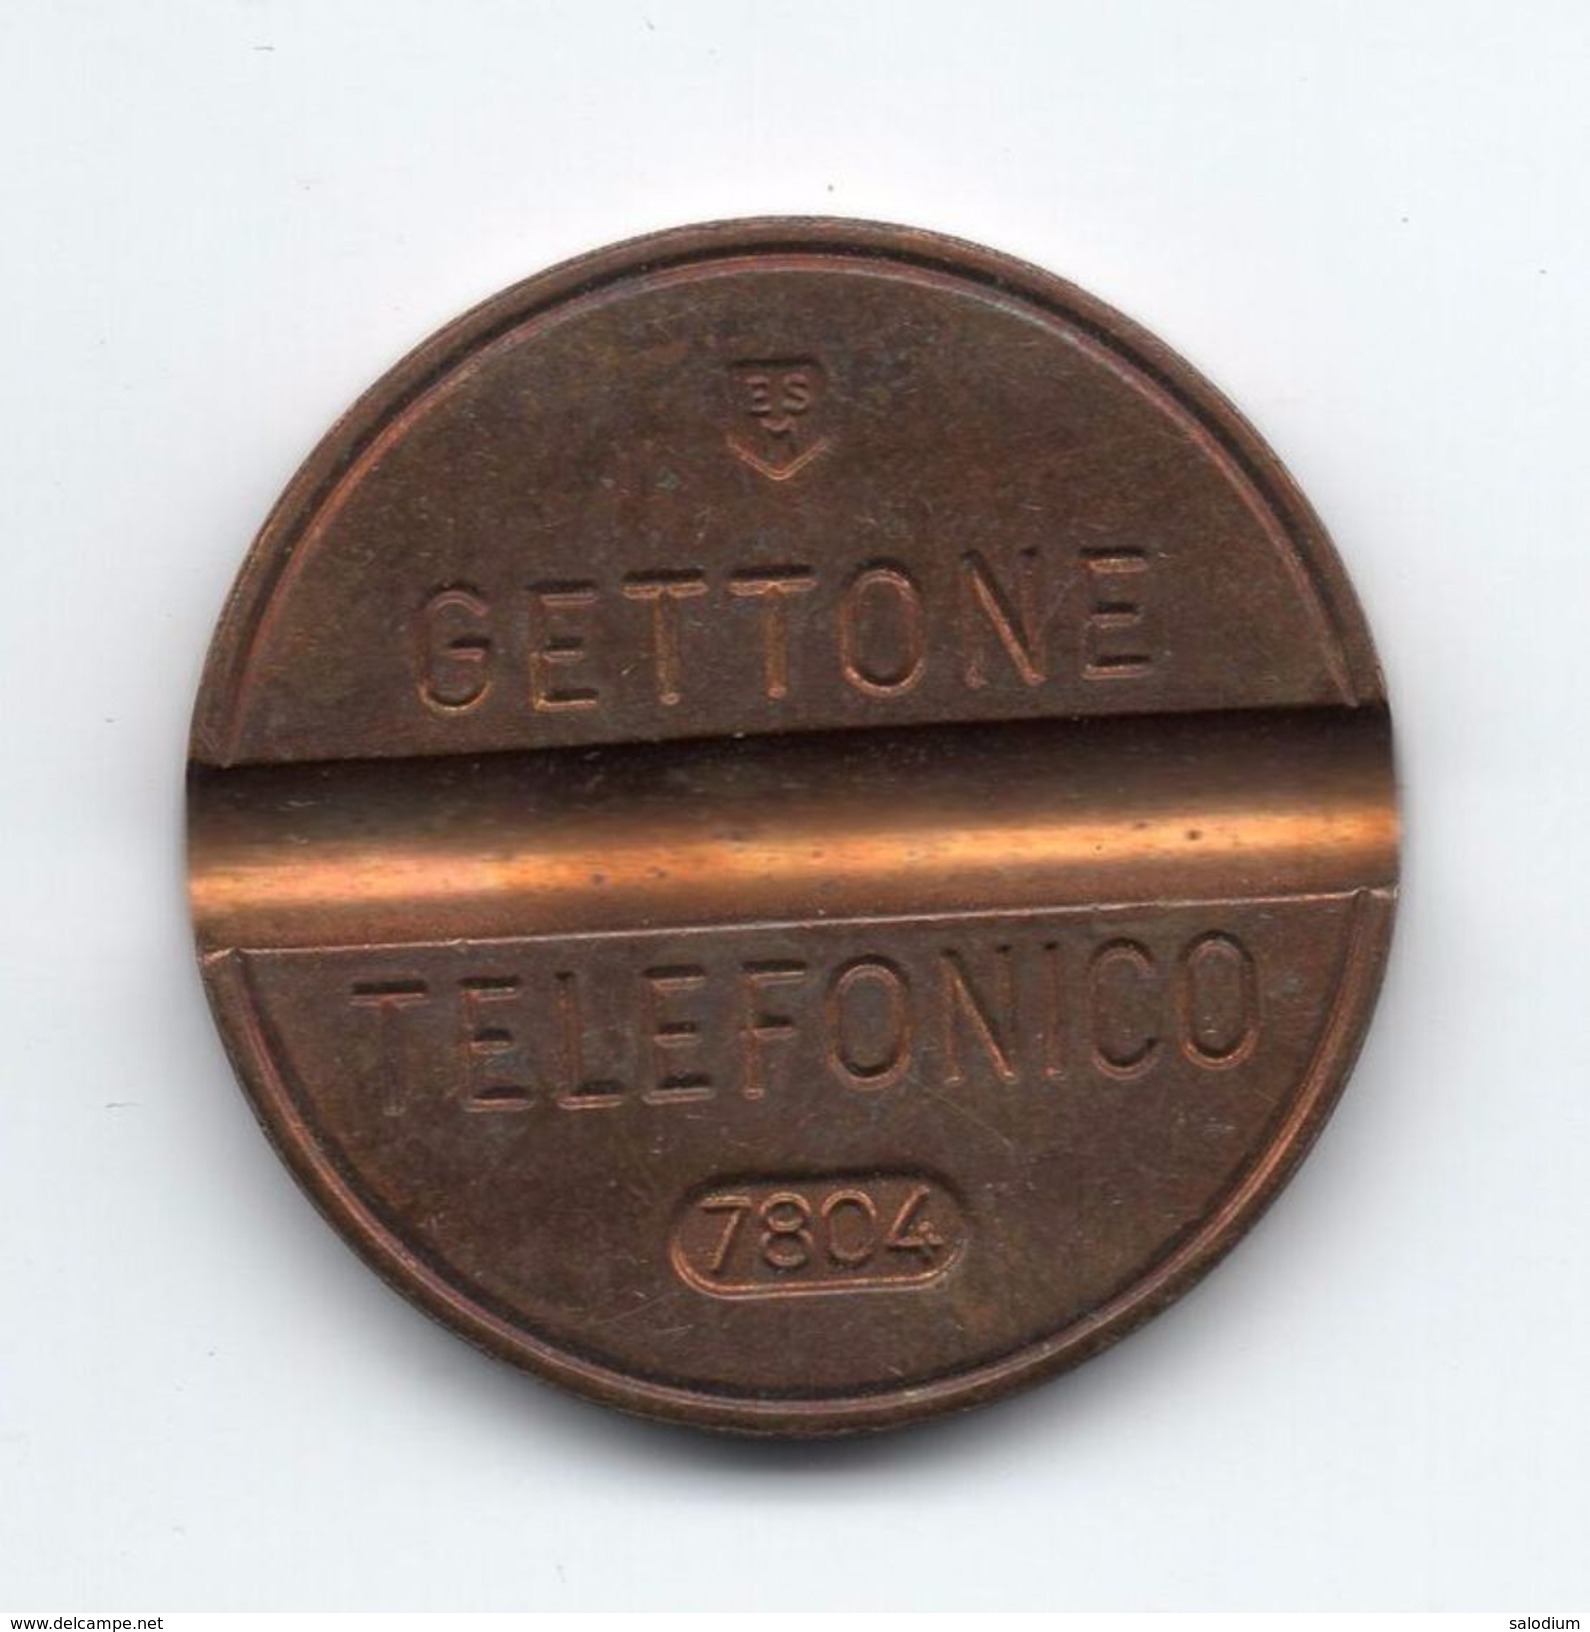 Gettone Telefonico 7804 Token Telephone - (Id-769) - Professionnels/De Société